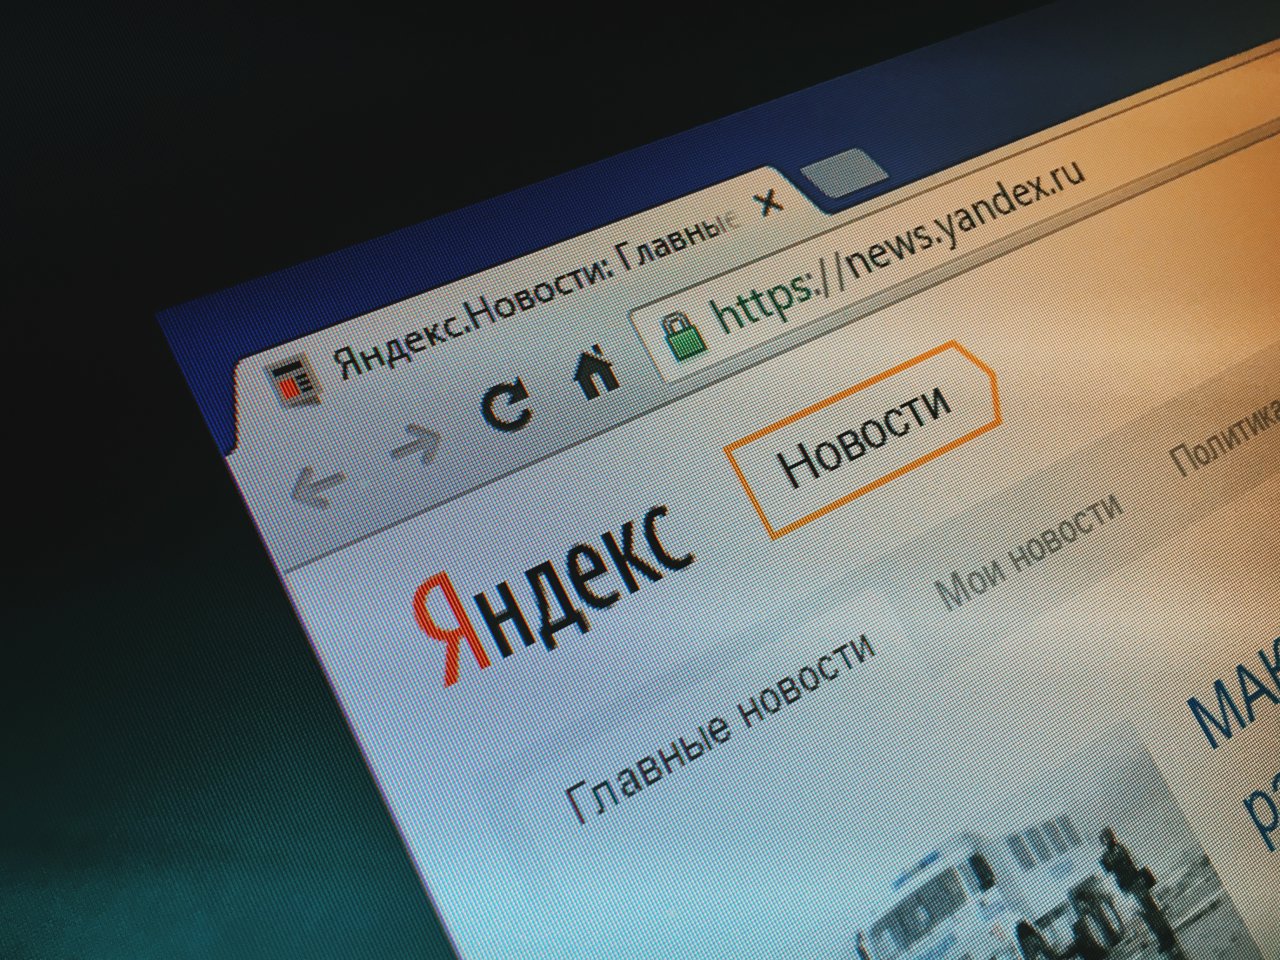 Яндекс представил новый партнерский кабинет Я.Новостей